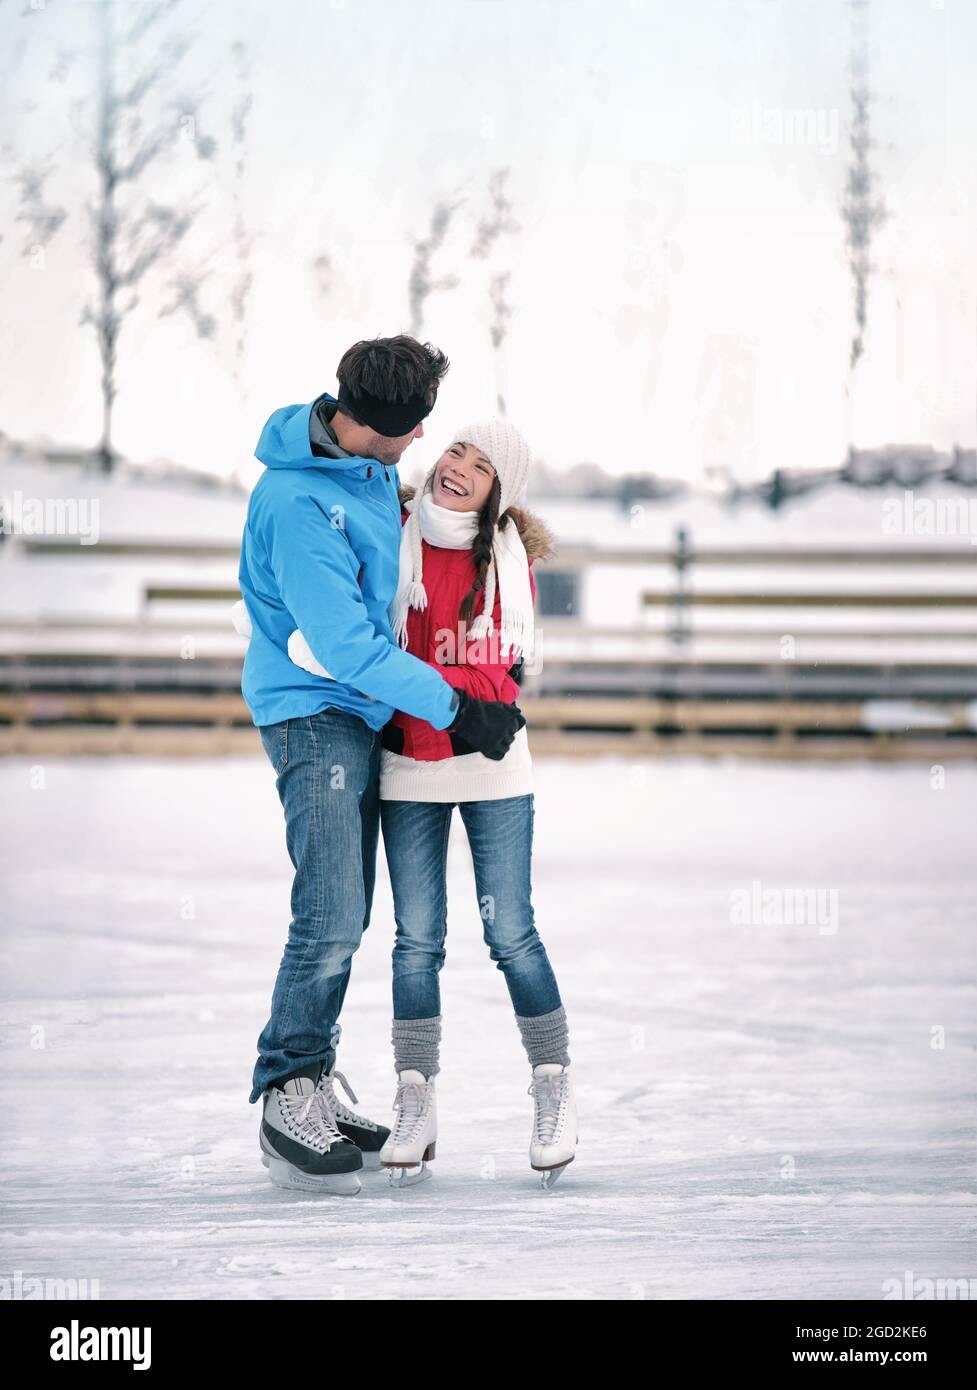 Eislaufen Winteraktivitäten Paar in der Liebe mit Spaß zu lernen, Eiskunstlauf auf der Eisbahn mit Verleih Schlittschuhe. Junge Skater romantisch im Freien Stockfoto